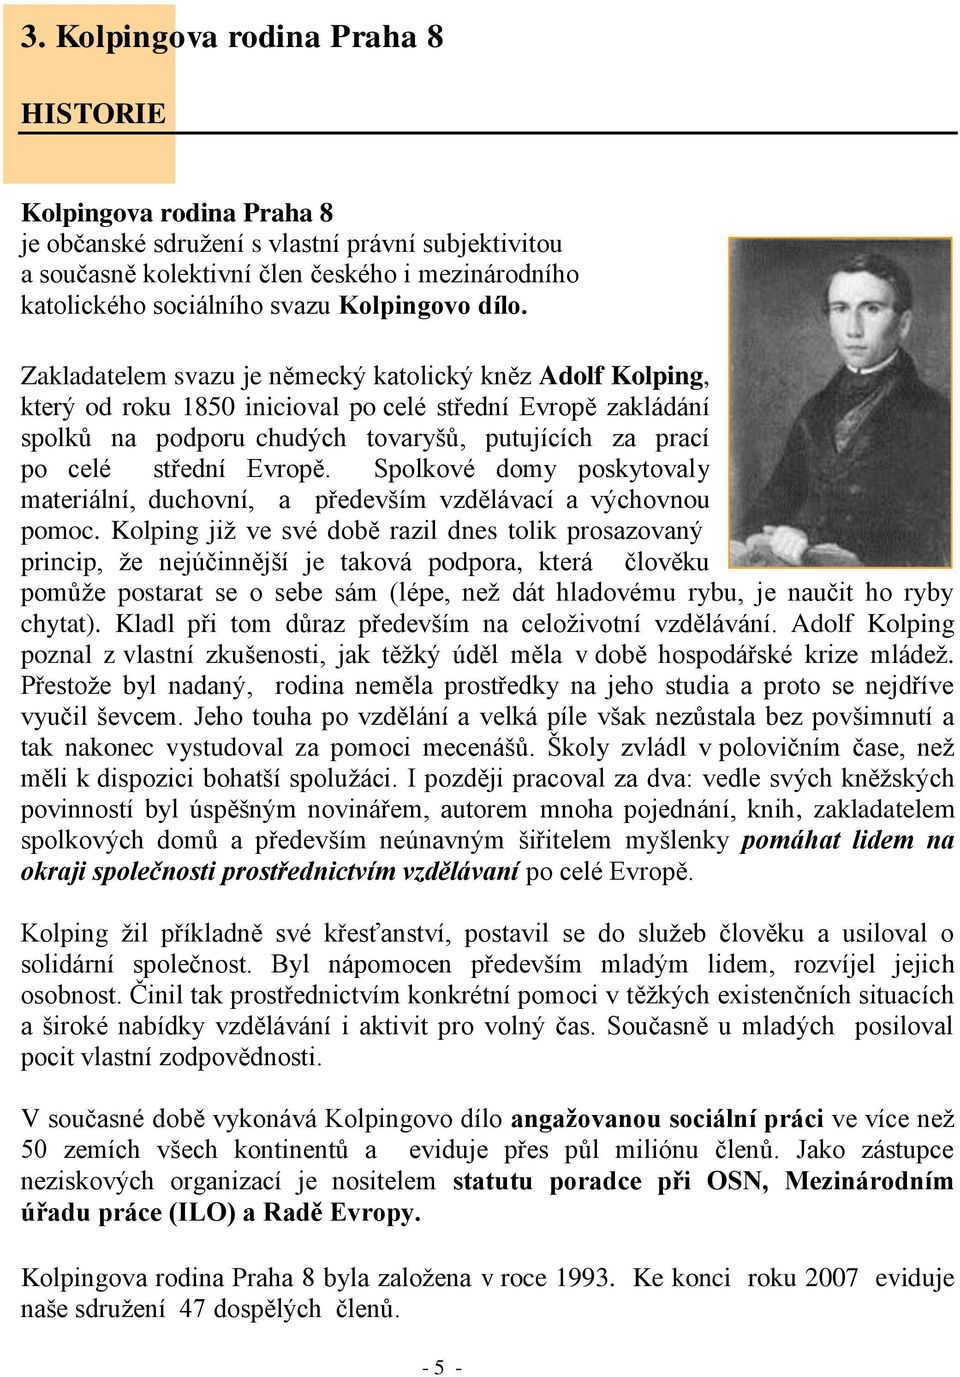 Zakladatelem svazu je německý katolický kněz Adolf Kolping, který od roku 1850 inicioval po celé střední Evropě zakládání spolků na podporu chudých tovaryšů, putujících za prací po celé střední